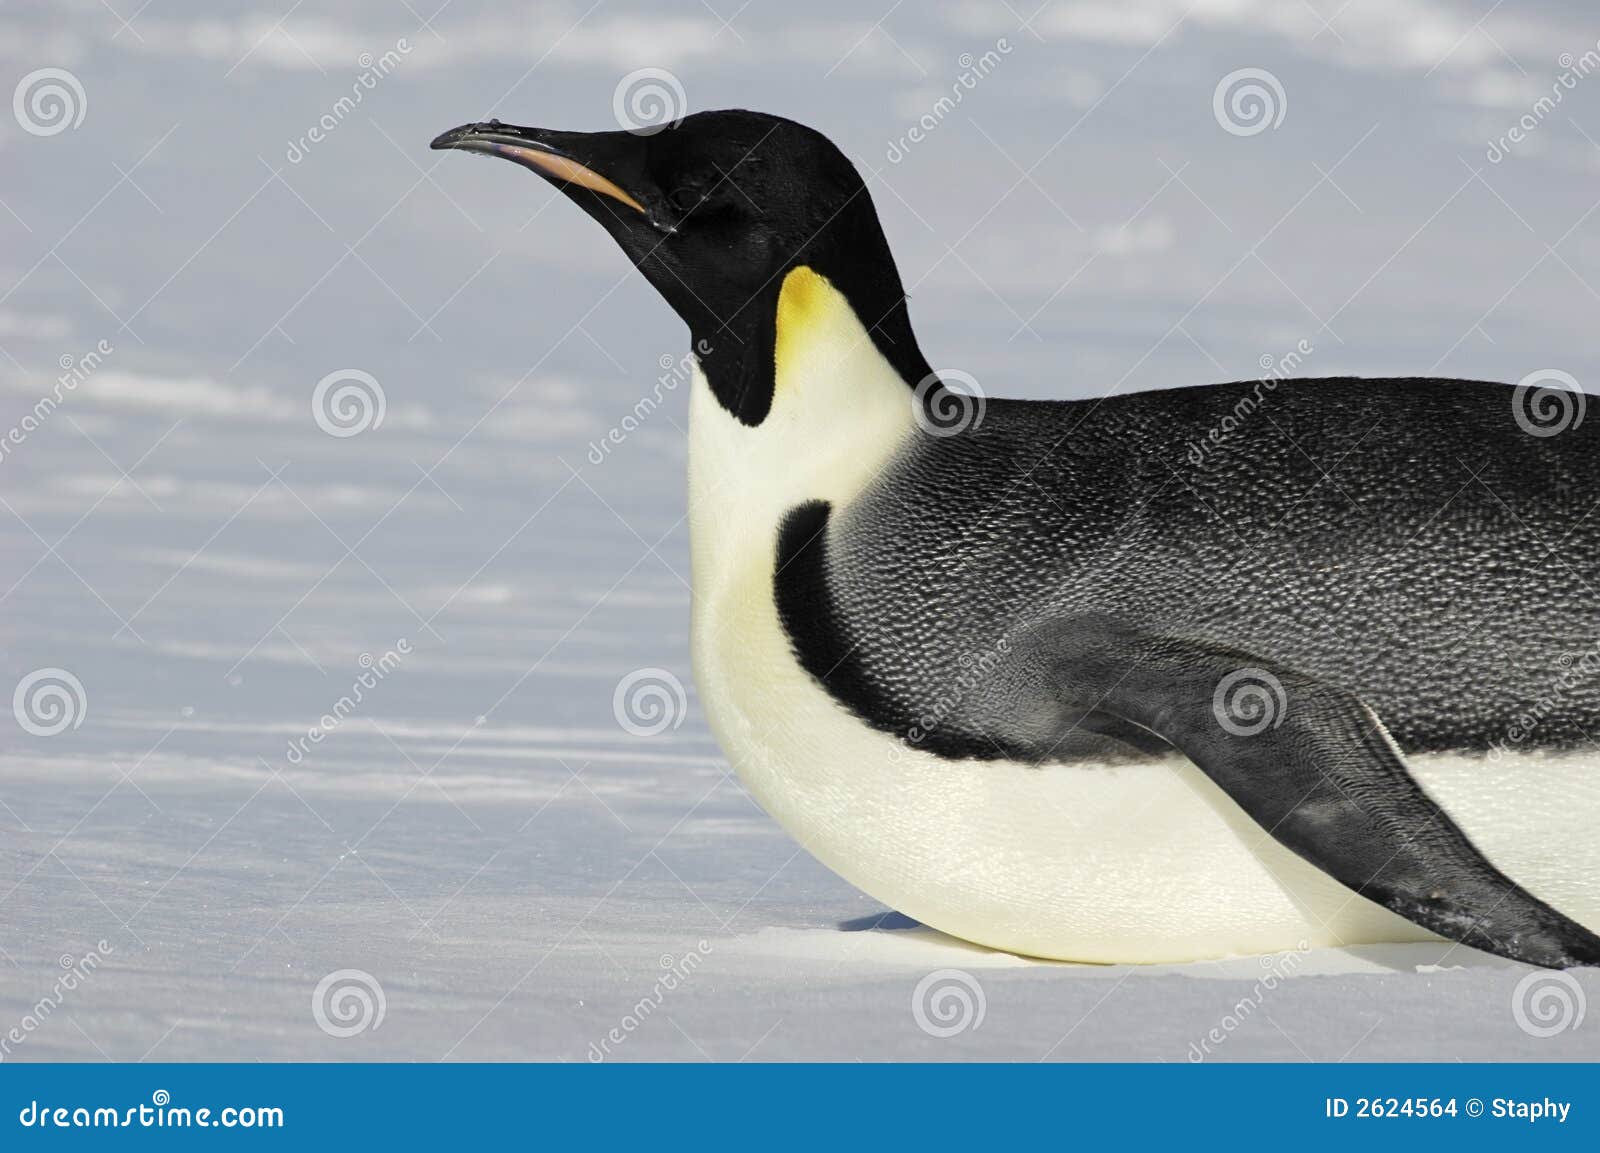 gliding antarctic penguin